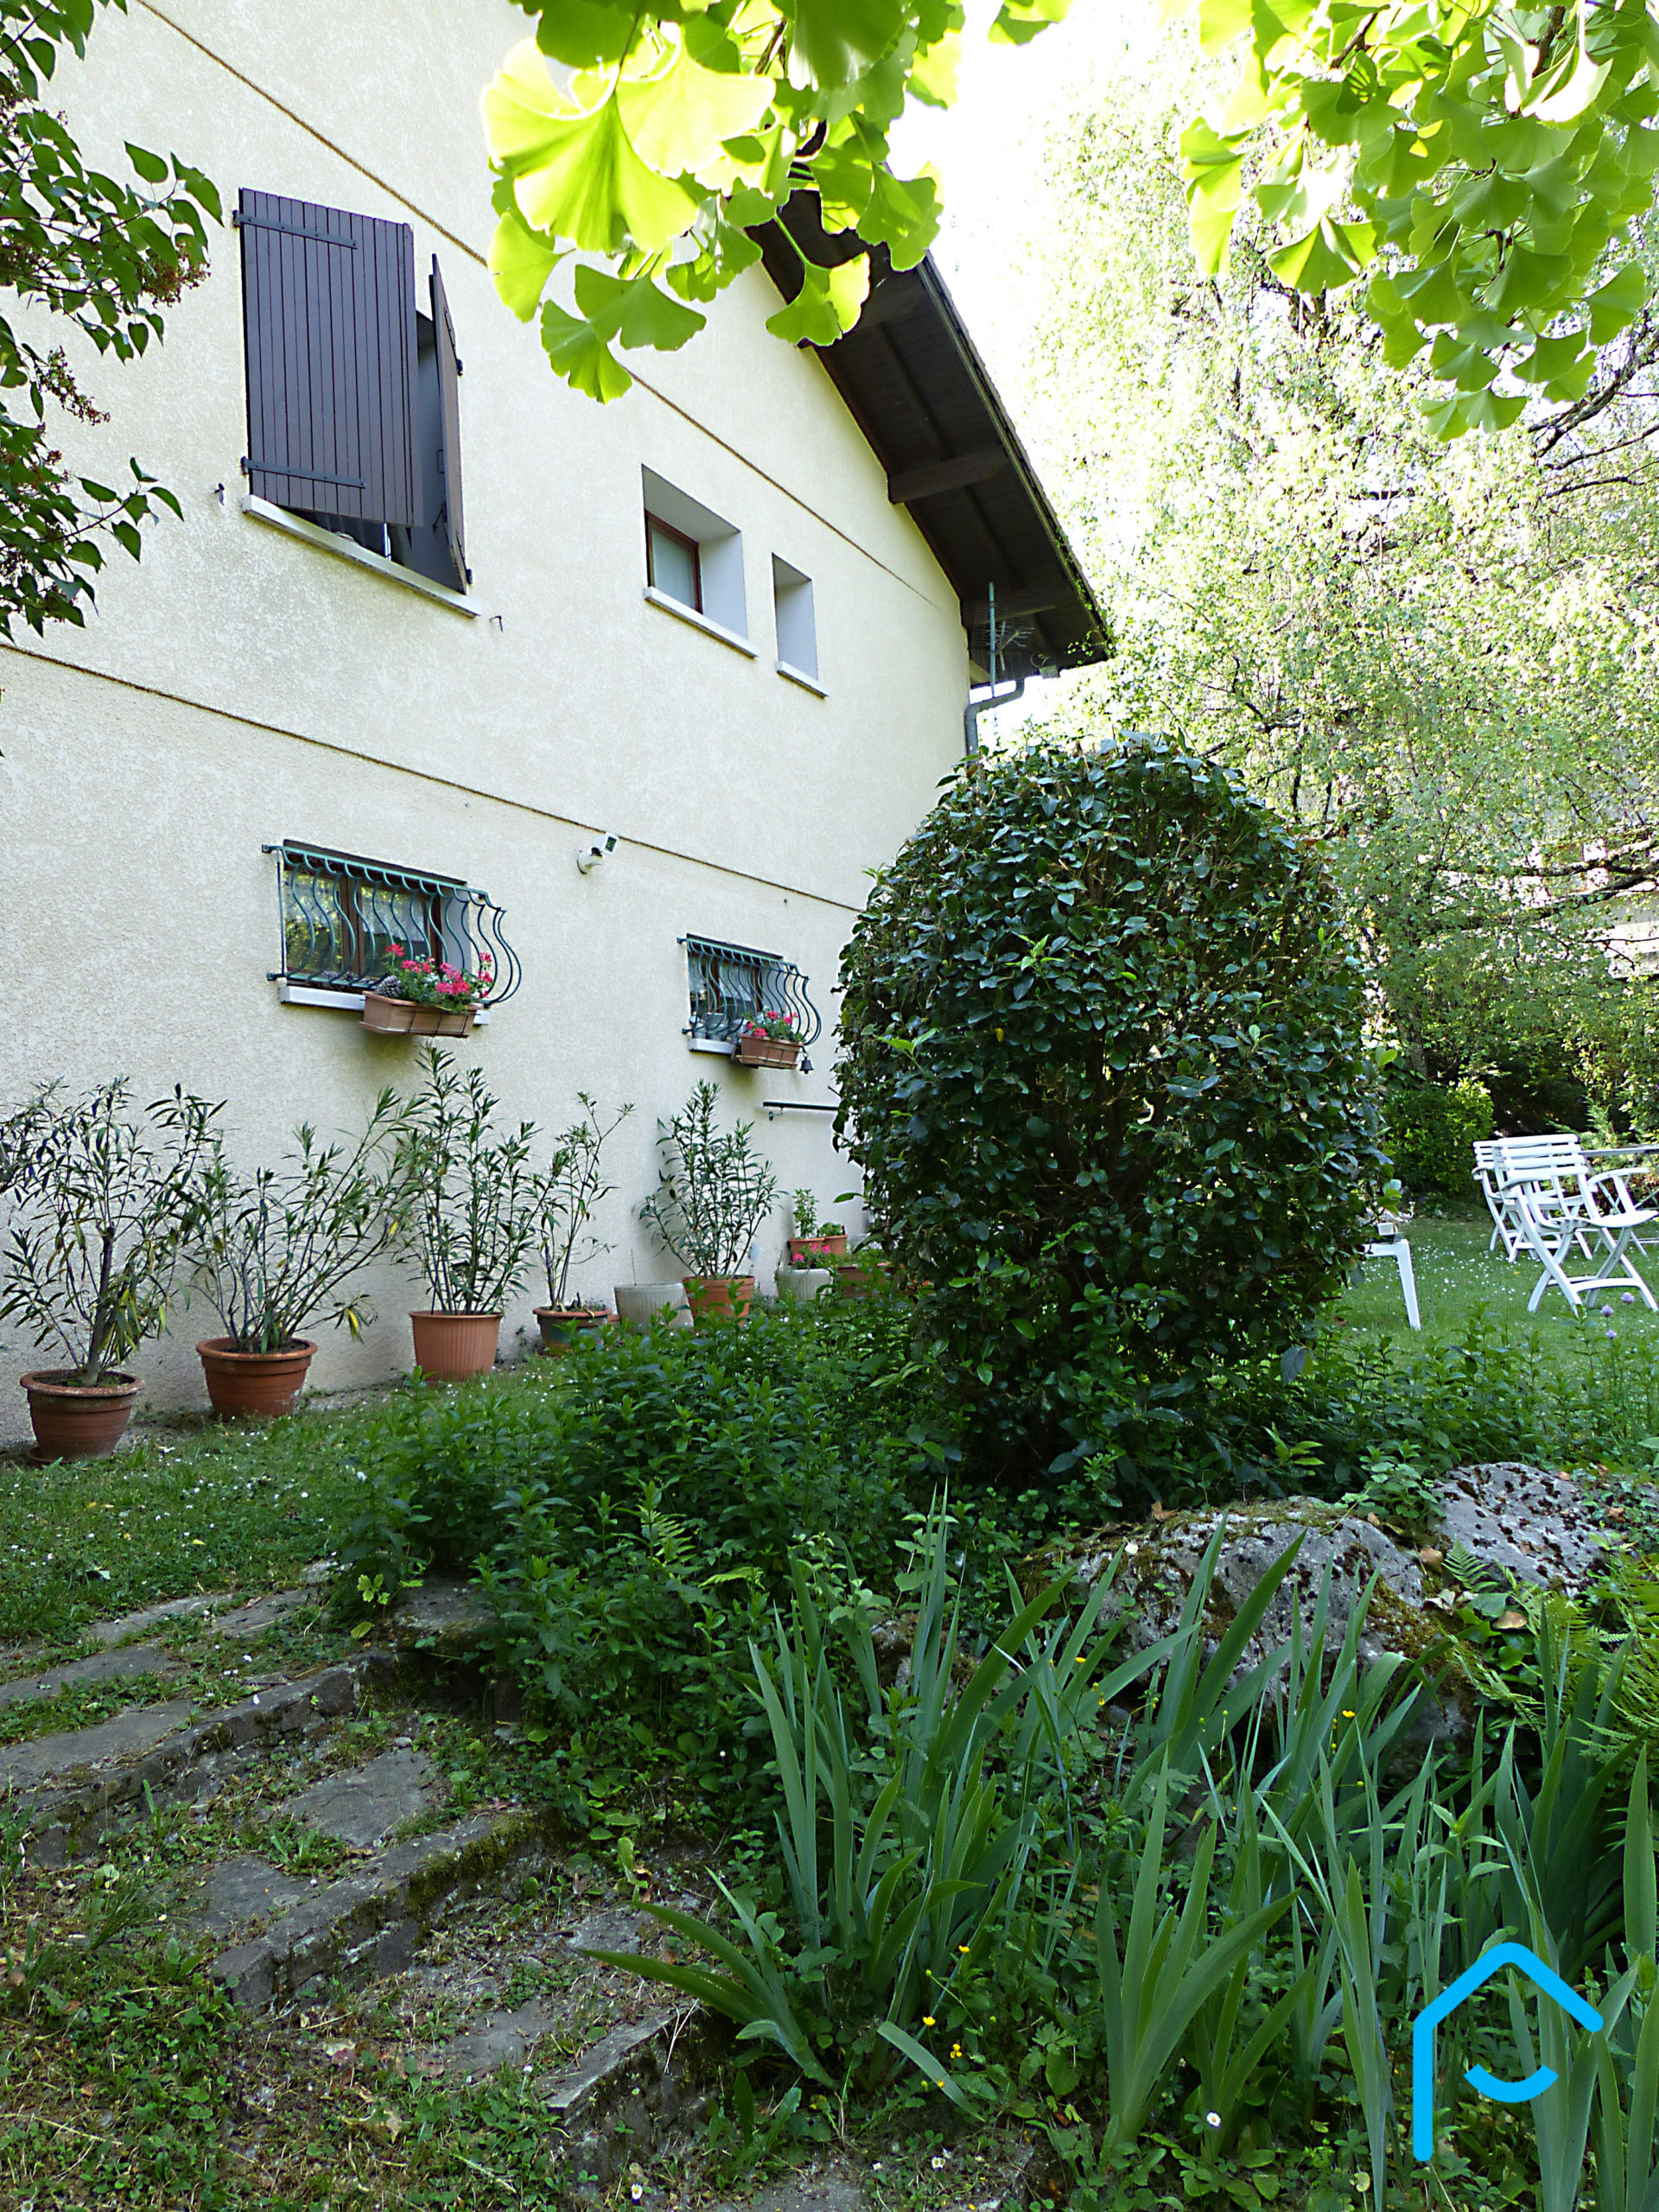 A vendre maison individuelle Jacob Bellecombette Savoie Chambéry terrain piscine jardin vue 7